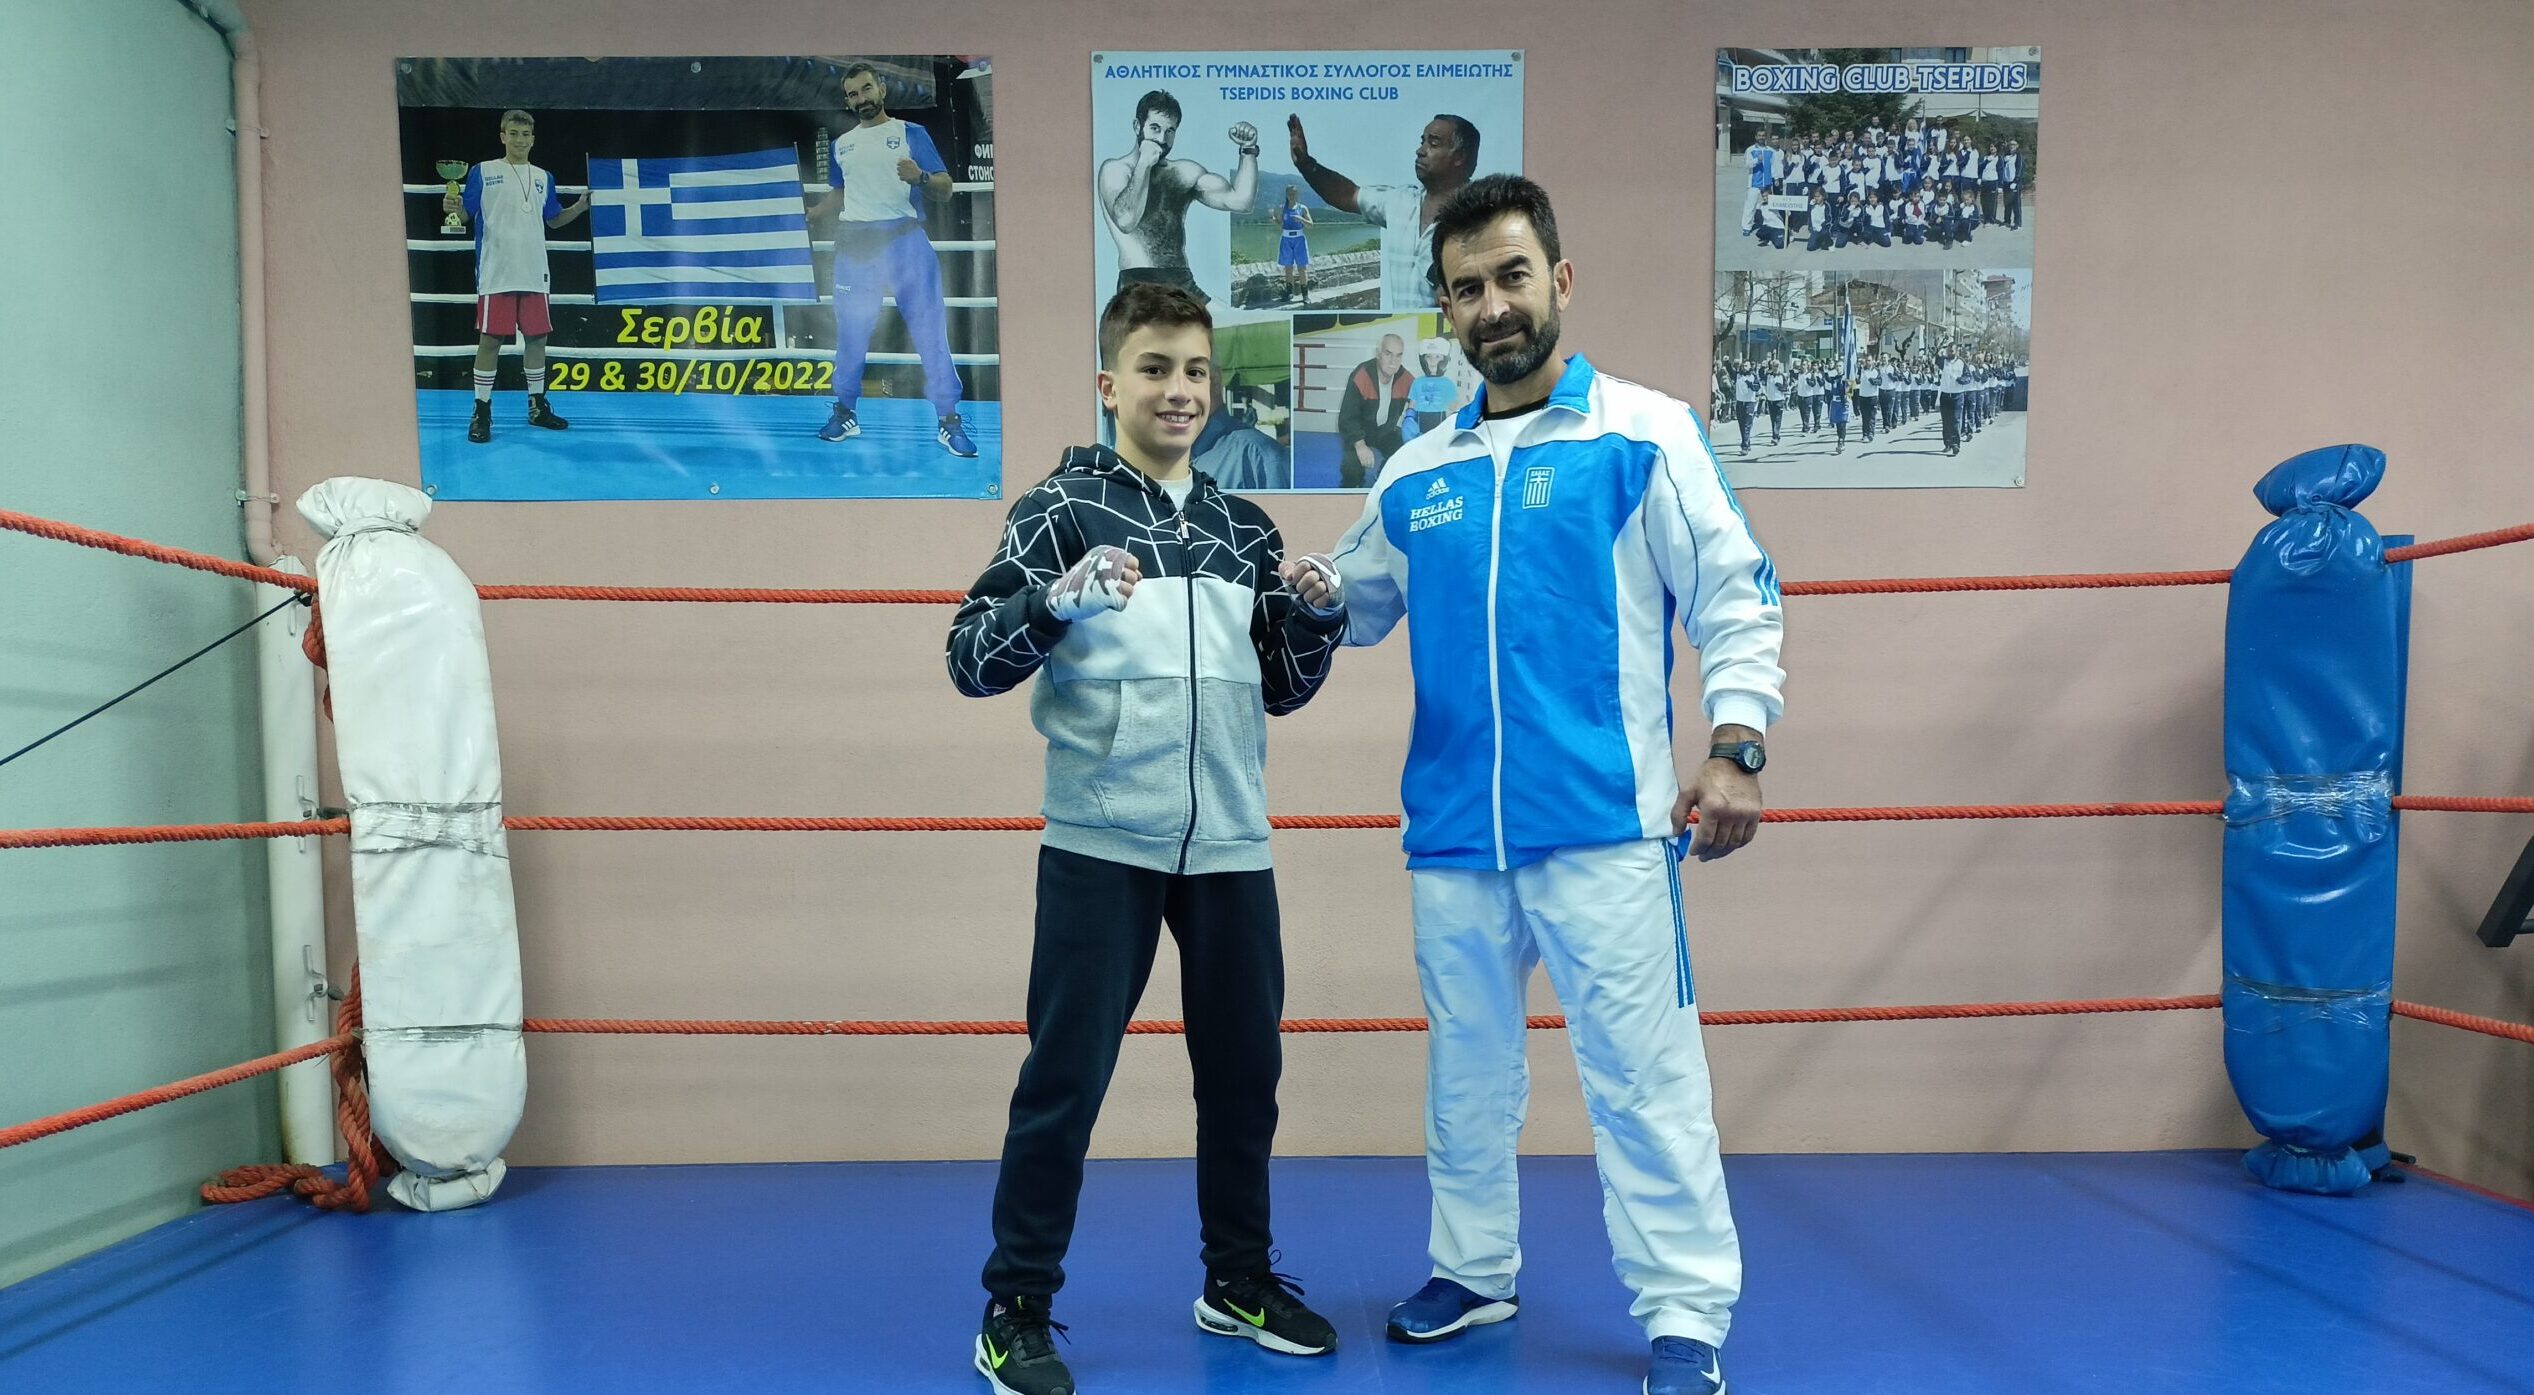 Άνοιξε τα φτερά του ο Αχιλλέας Τσεπίδης για να πετάξει στην Ρουμανία για το Πανευρωπαϊκό Πρωτάθλημα Πυγμαχίας Παίδων – Κορασίδων